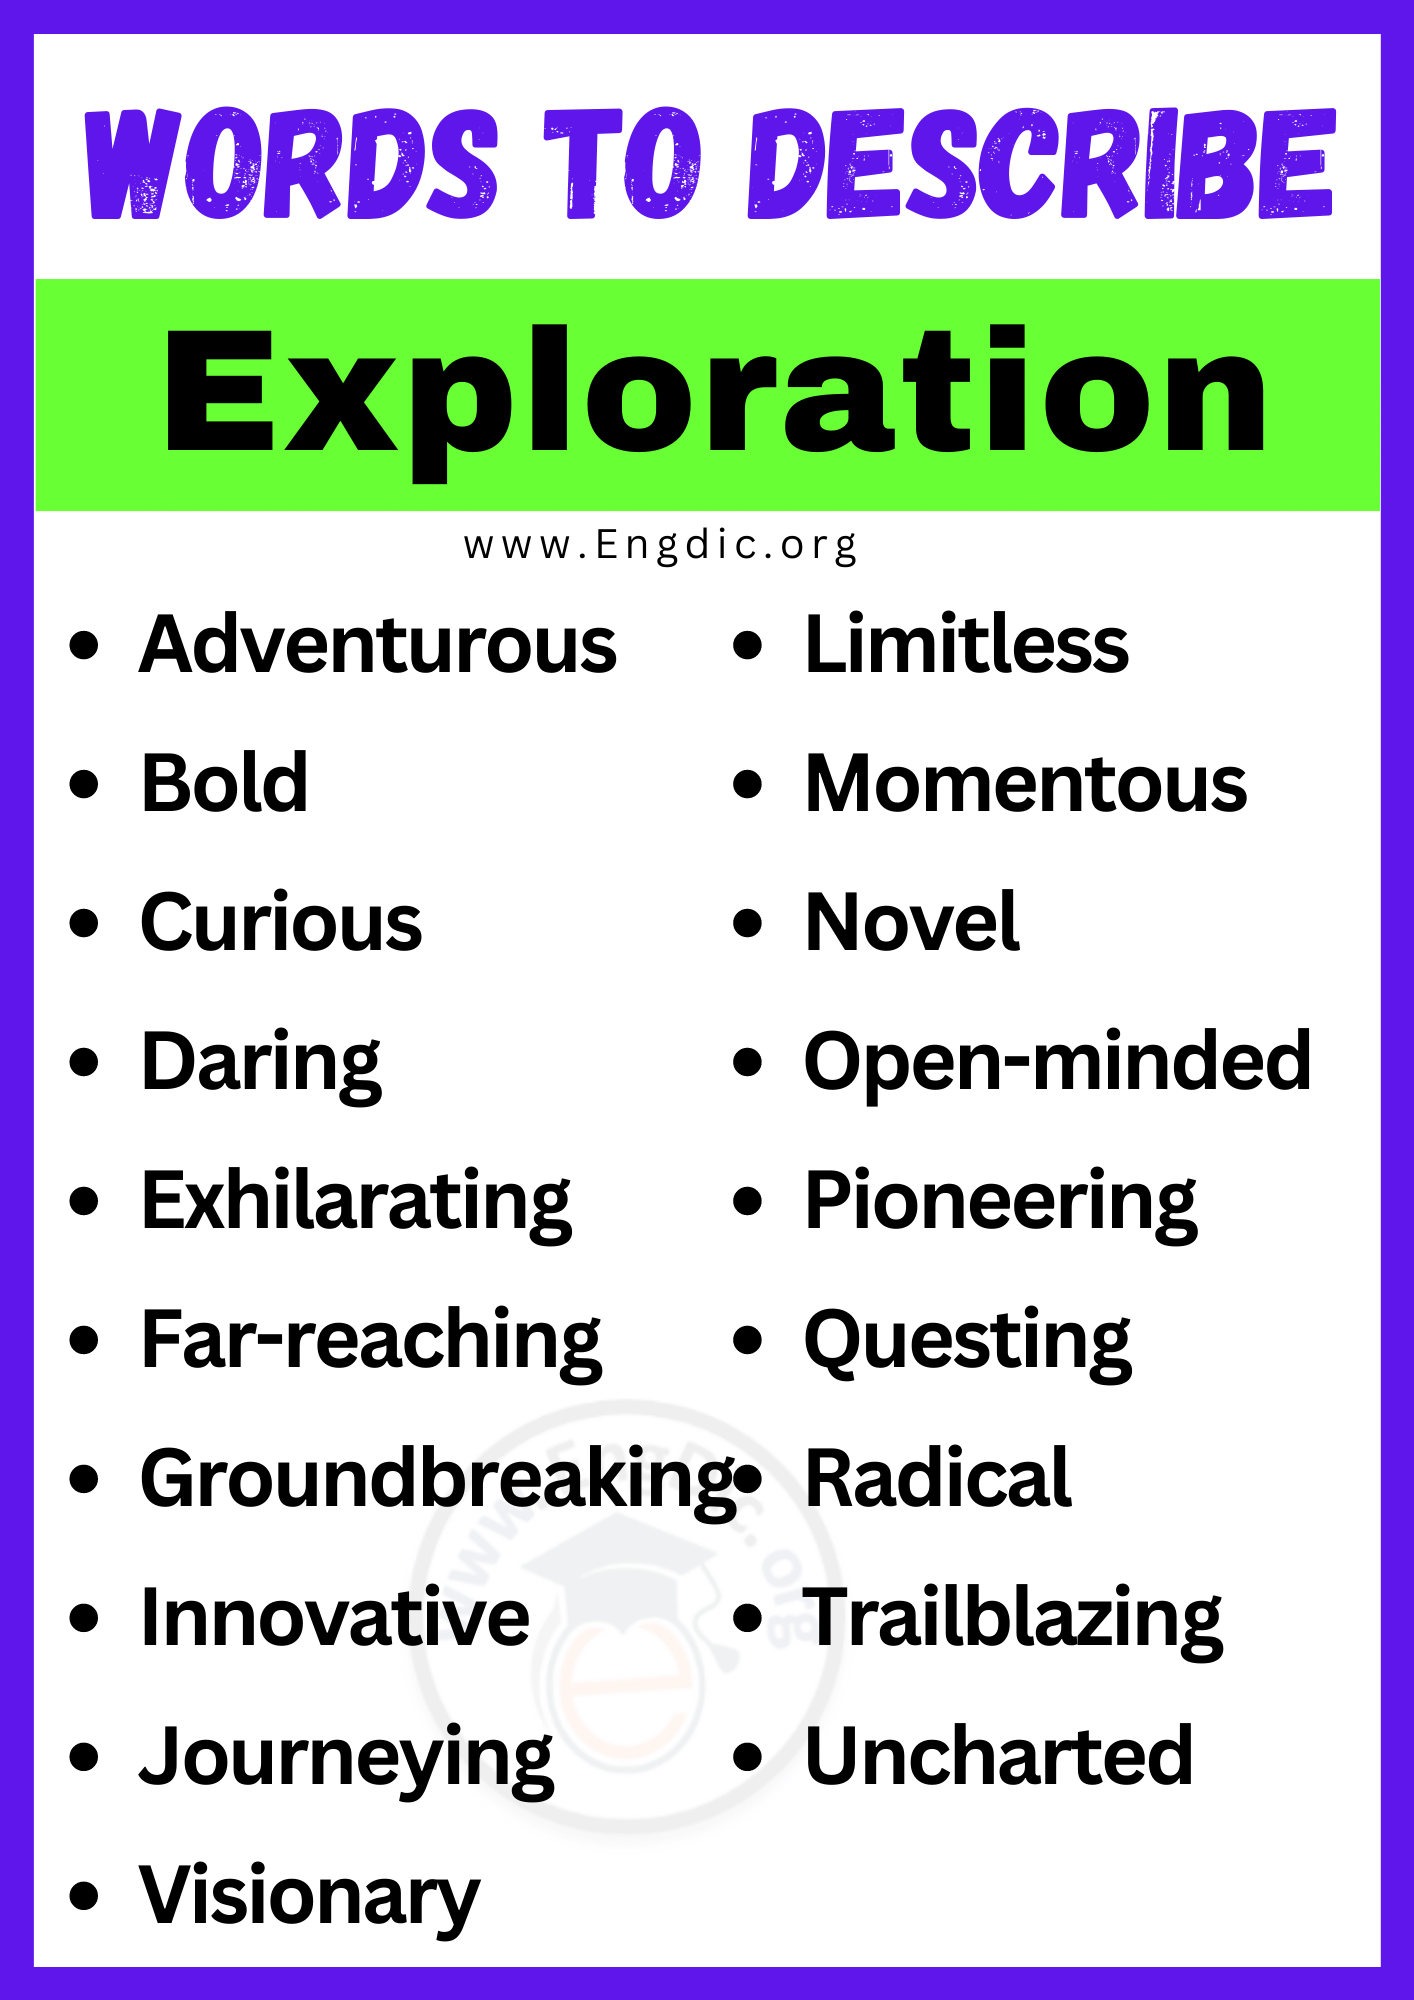 Words to Describe Exploration